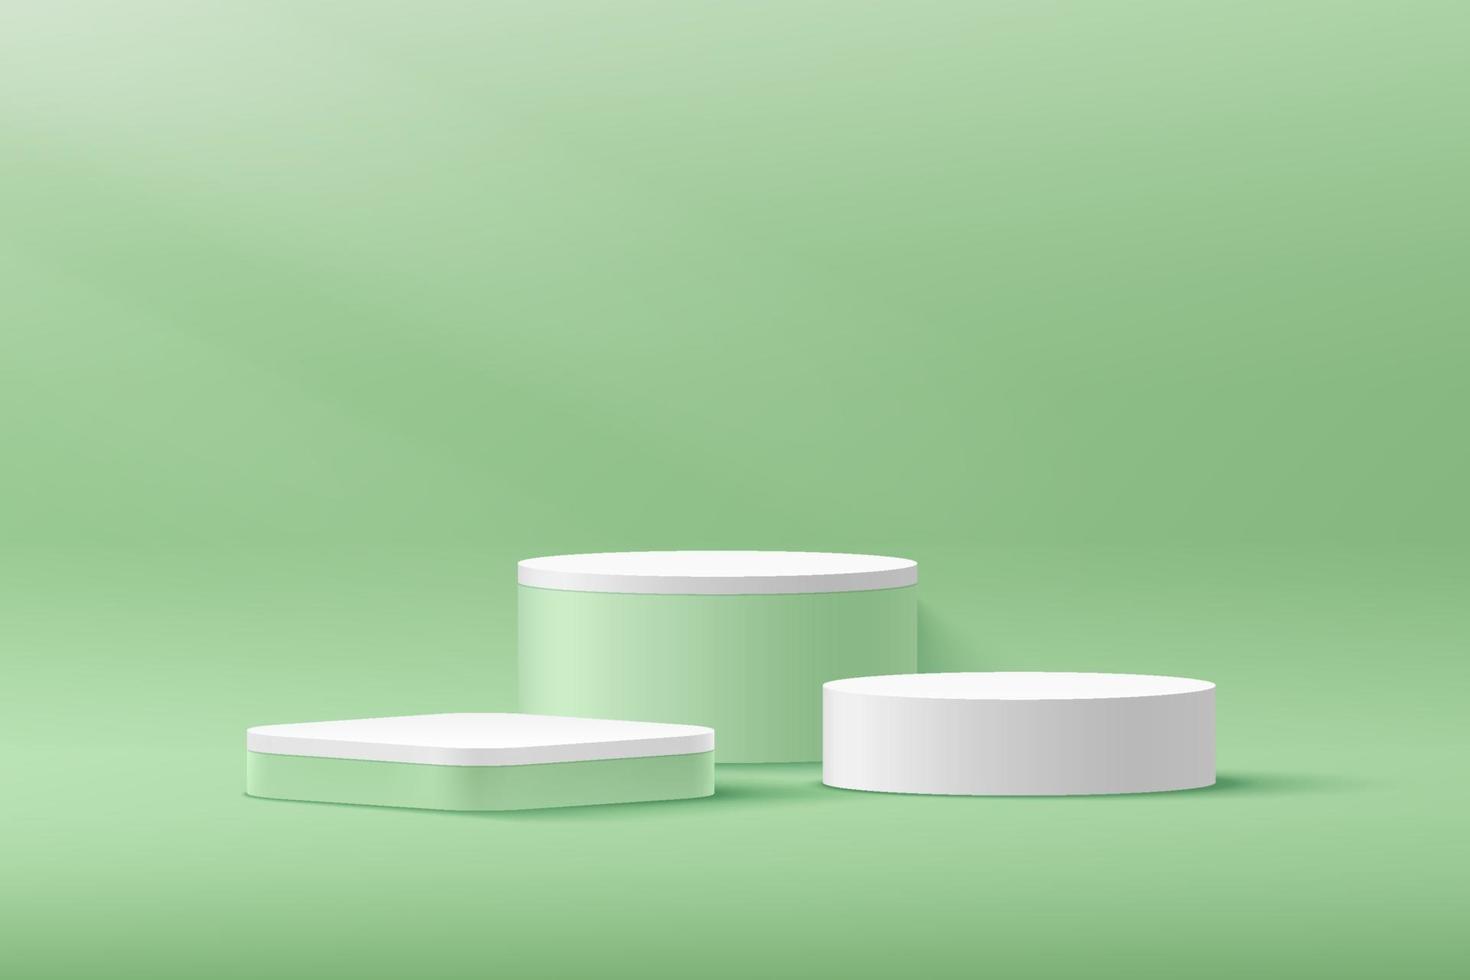 moderno cilindro bianco, podio con piedistallo cubo verde, stanza vuota verde chiaro con ombra della finestra. rendering vettoriale astratto forma 3d, presentazione di prodotti cosmetici. scena minima della stanza pastello.